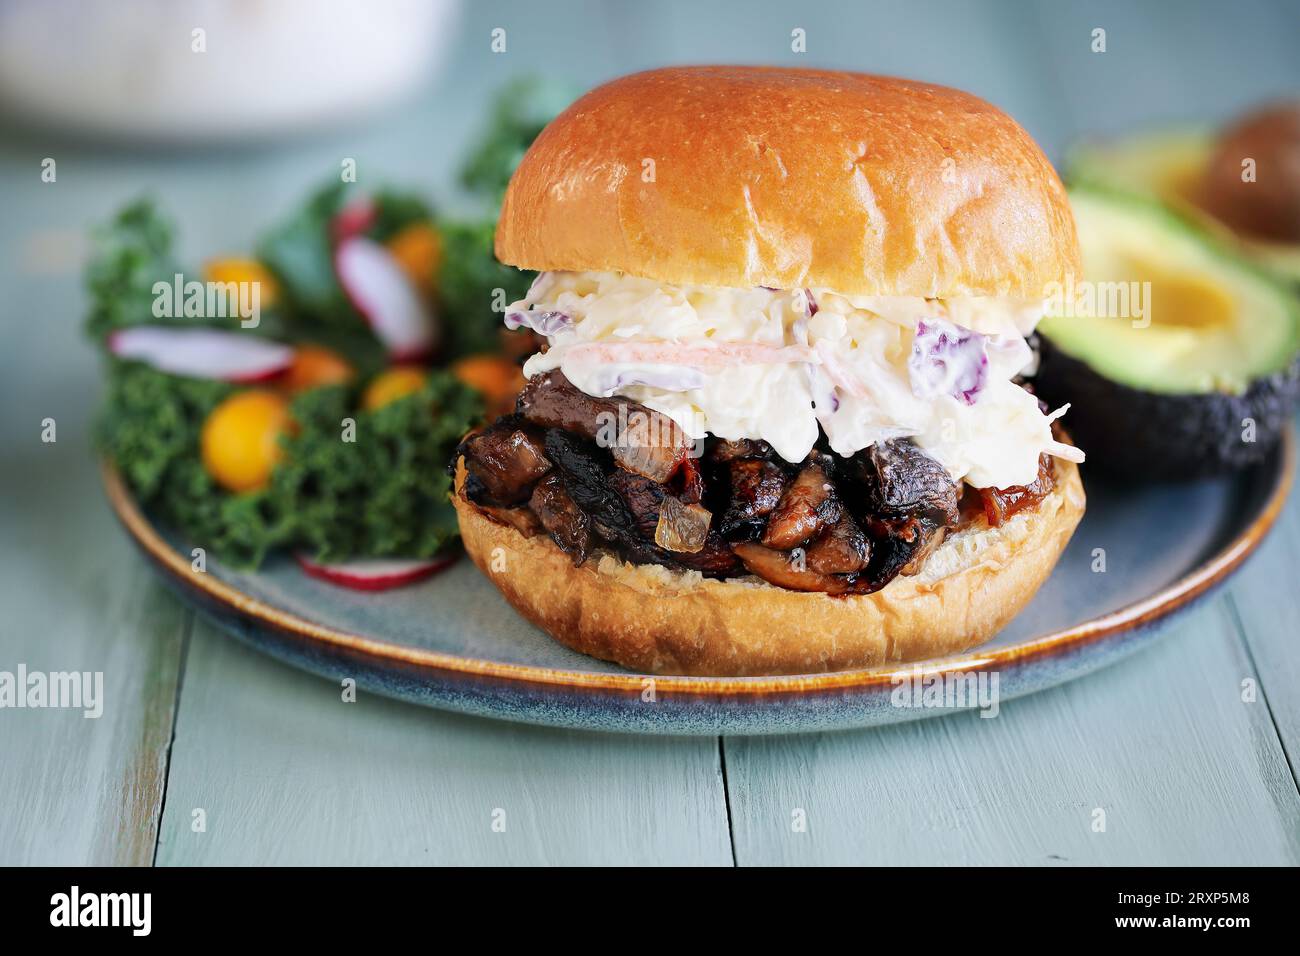 Veganer und vegetarischer Portobello-Pilzburger mit Slaw. Mit Pilzen, Zwiebeln und hausgemachter bbq-Sauce auf einem frischen Brioche-Brötchen. Stockfoto